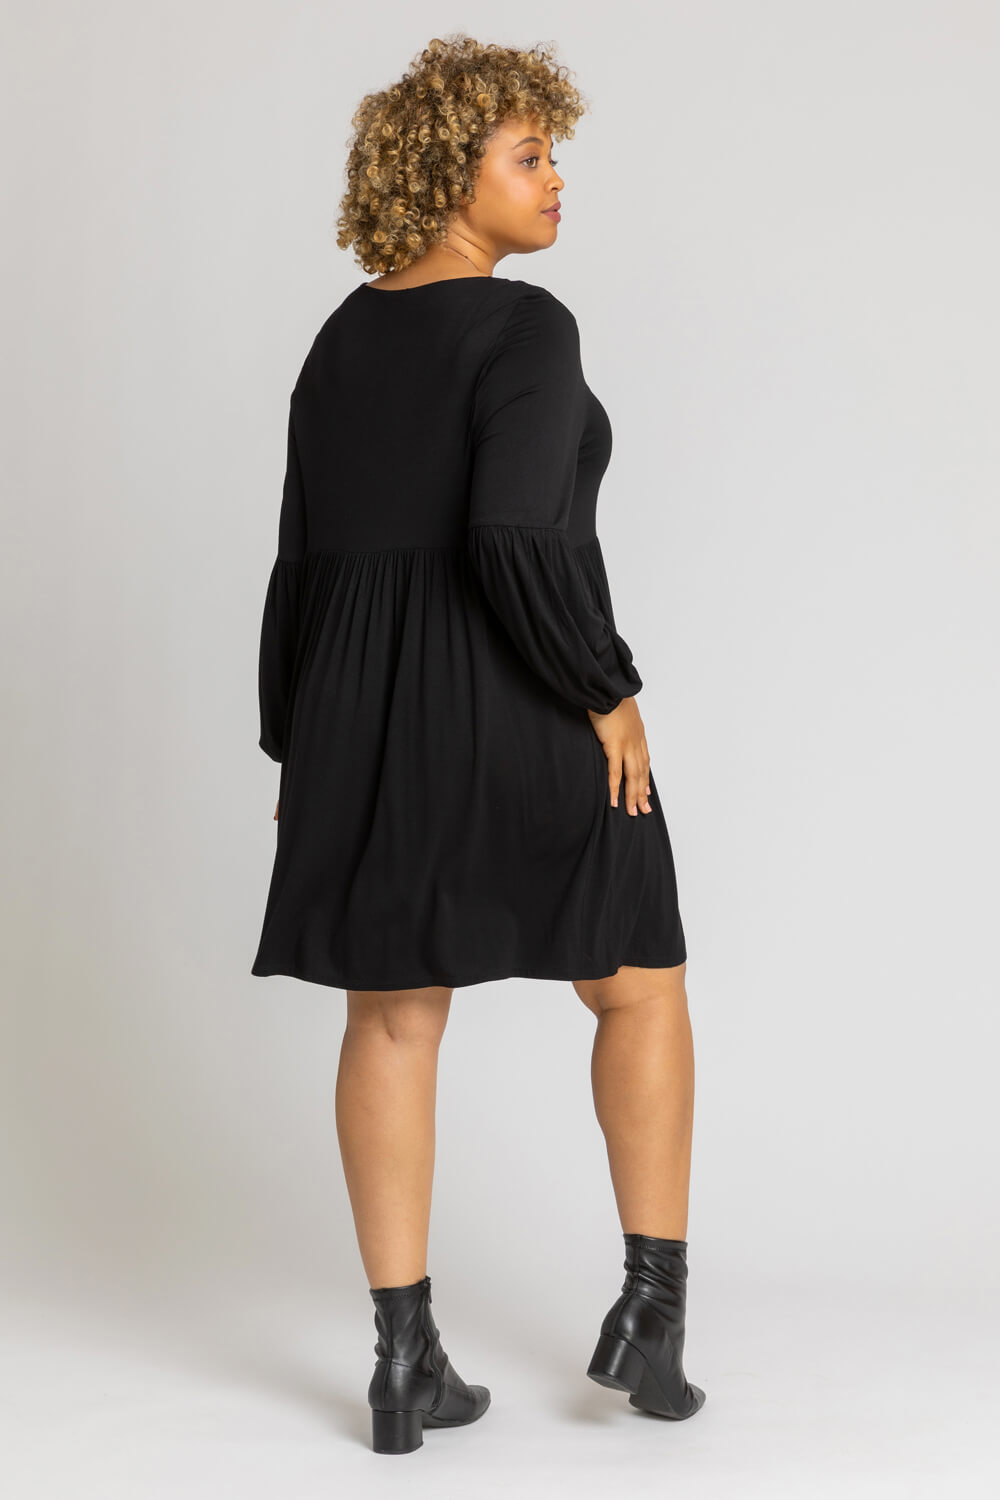 Black Curve Plain Tunic Dress, Image 2 of 4